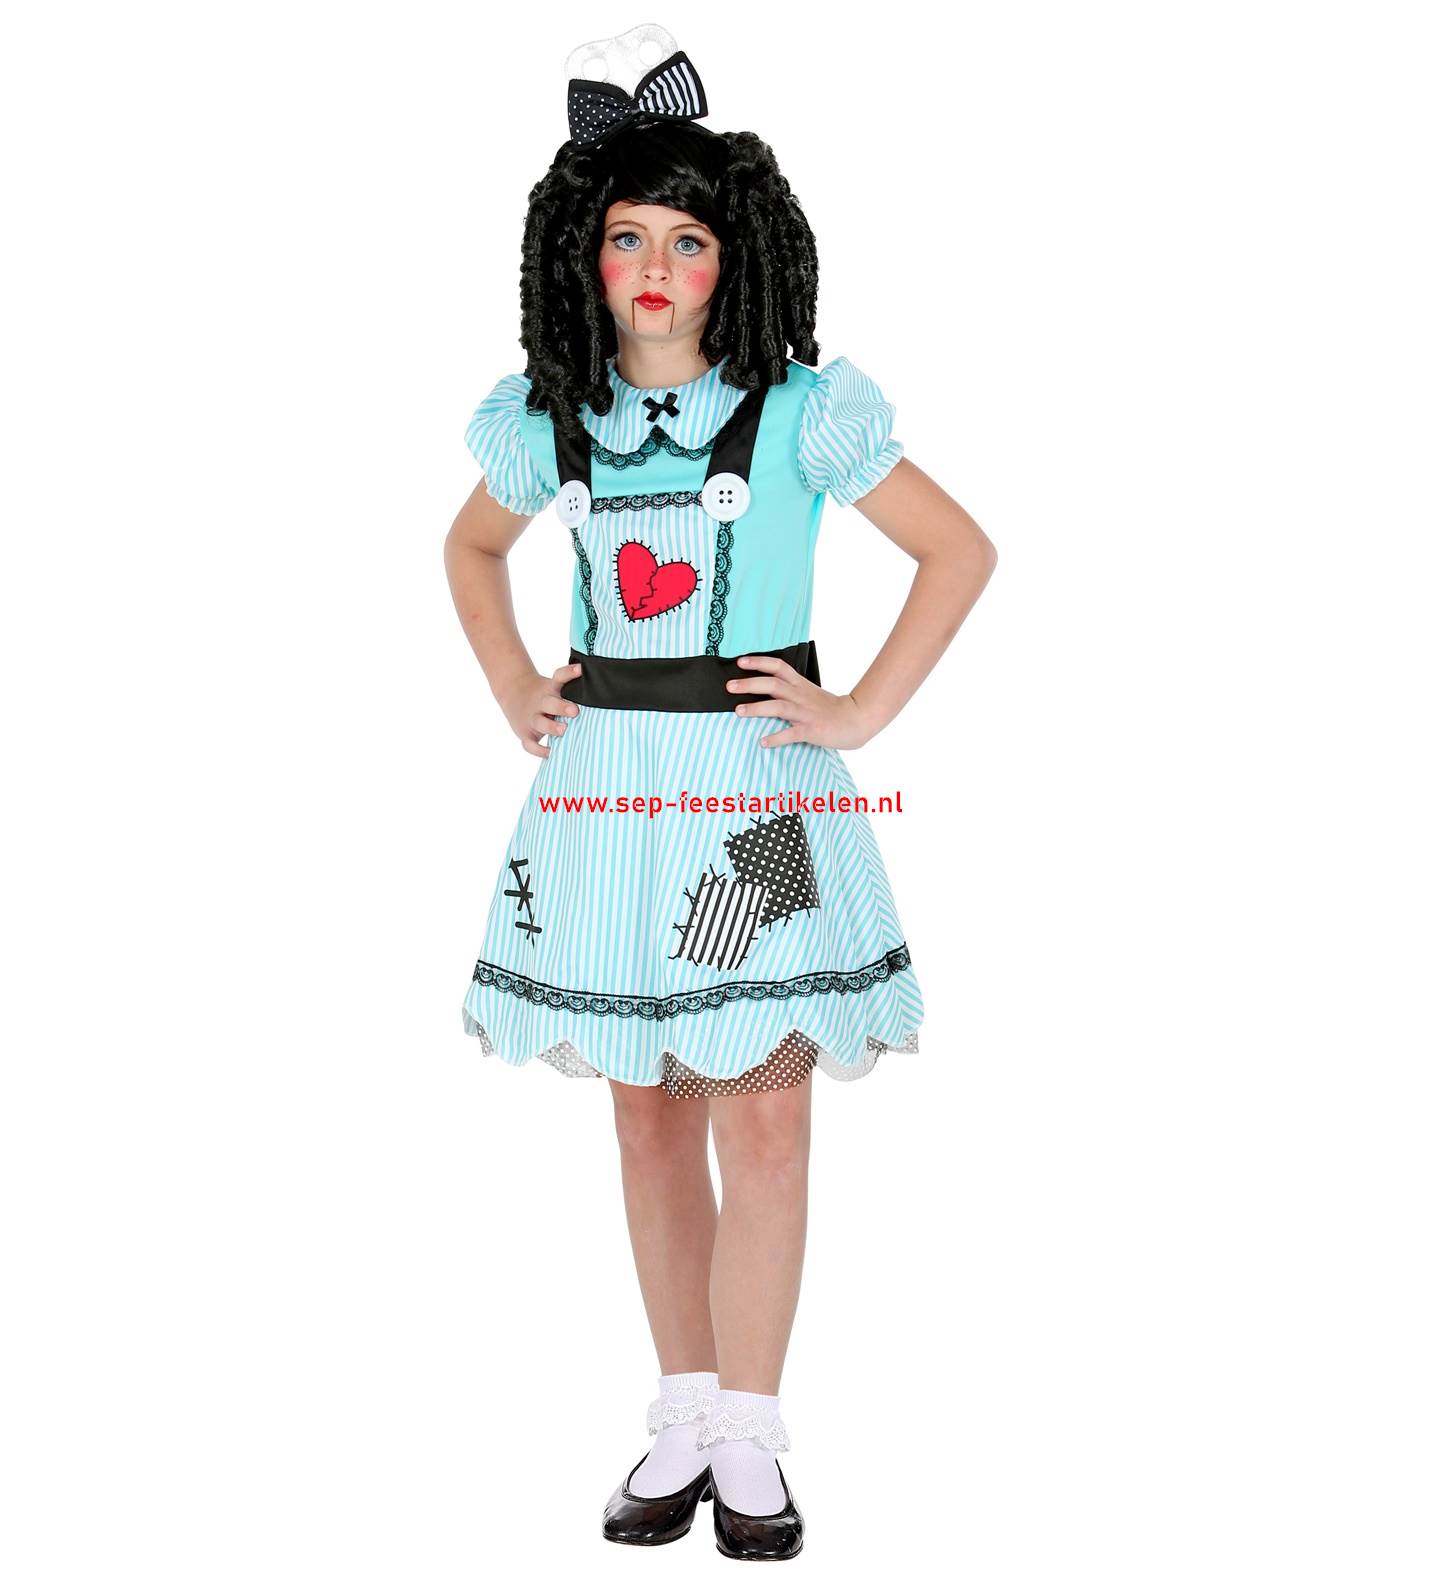 Afhankelijk Trojaanse paard Structureel Meisjes Halloween kostuum: Doll 2dlg. direct leverbaar! - SEP Feestartikelen